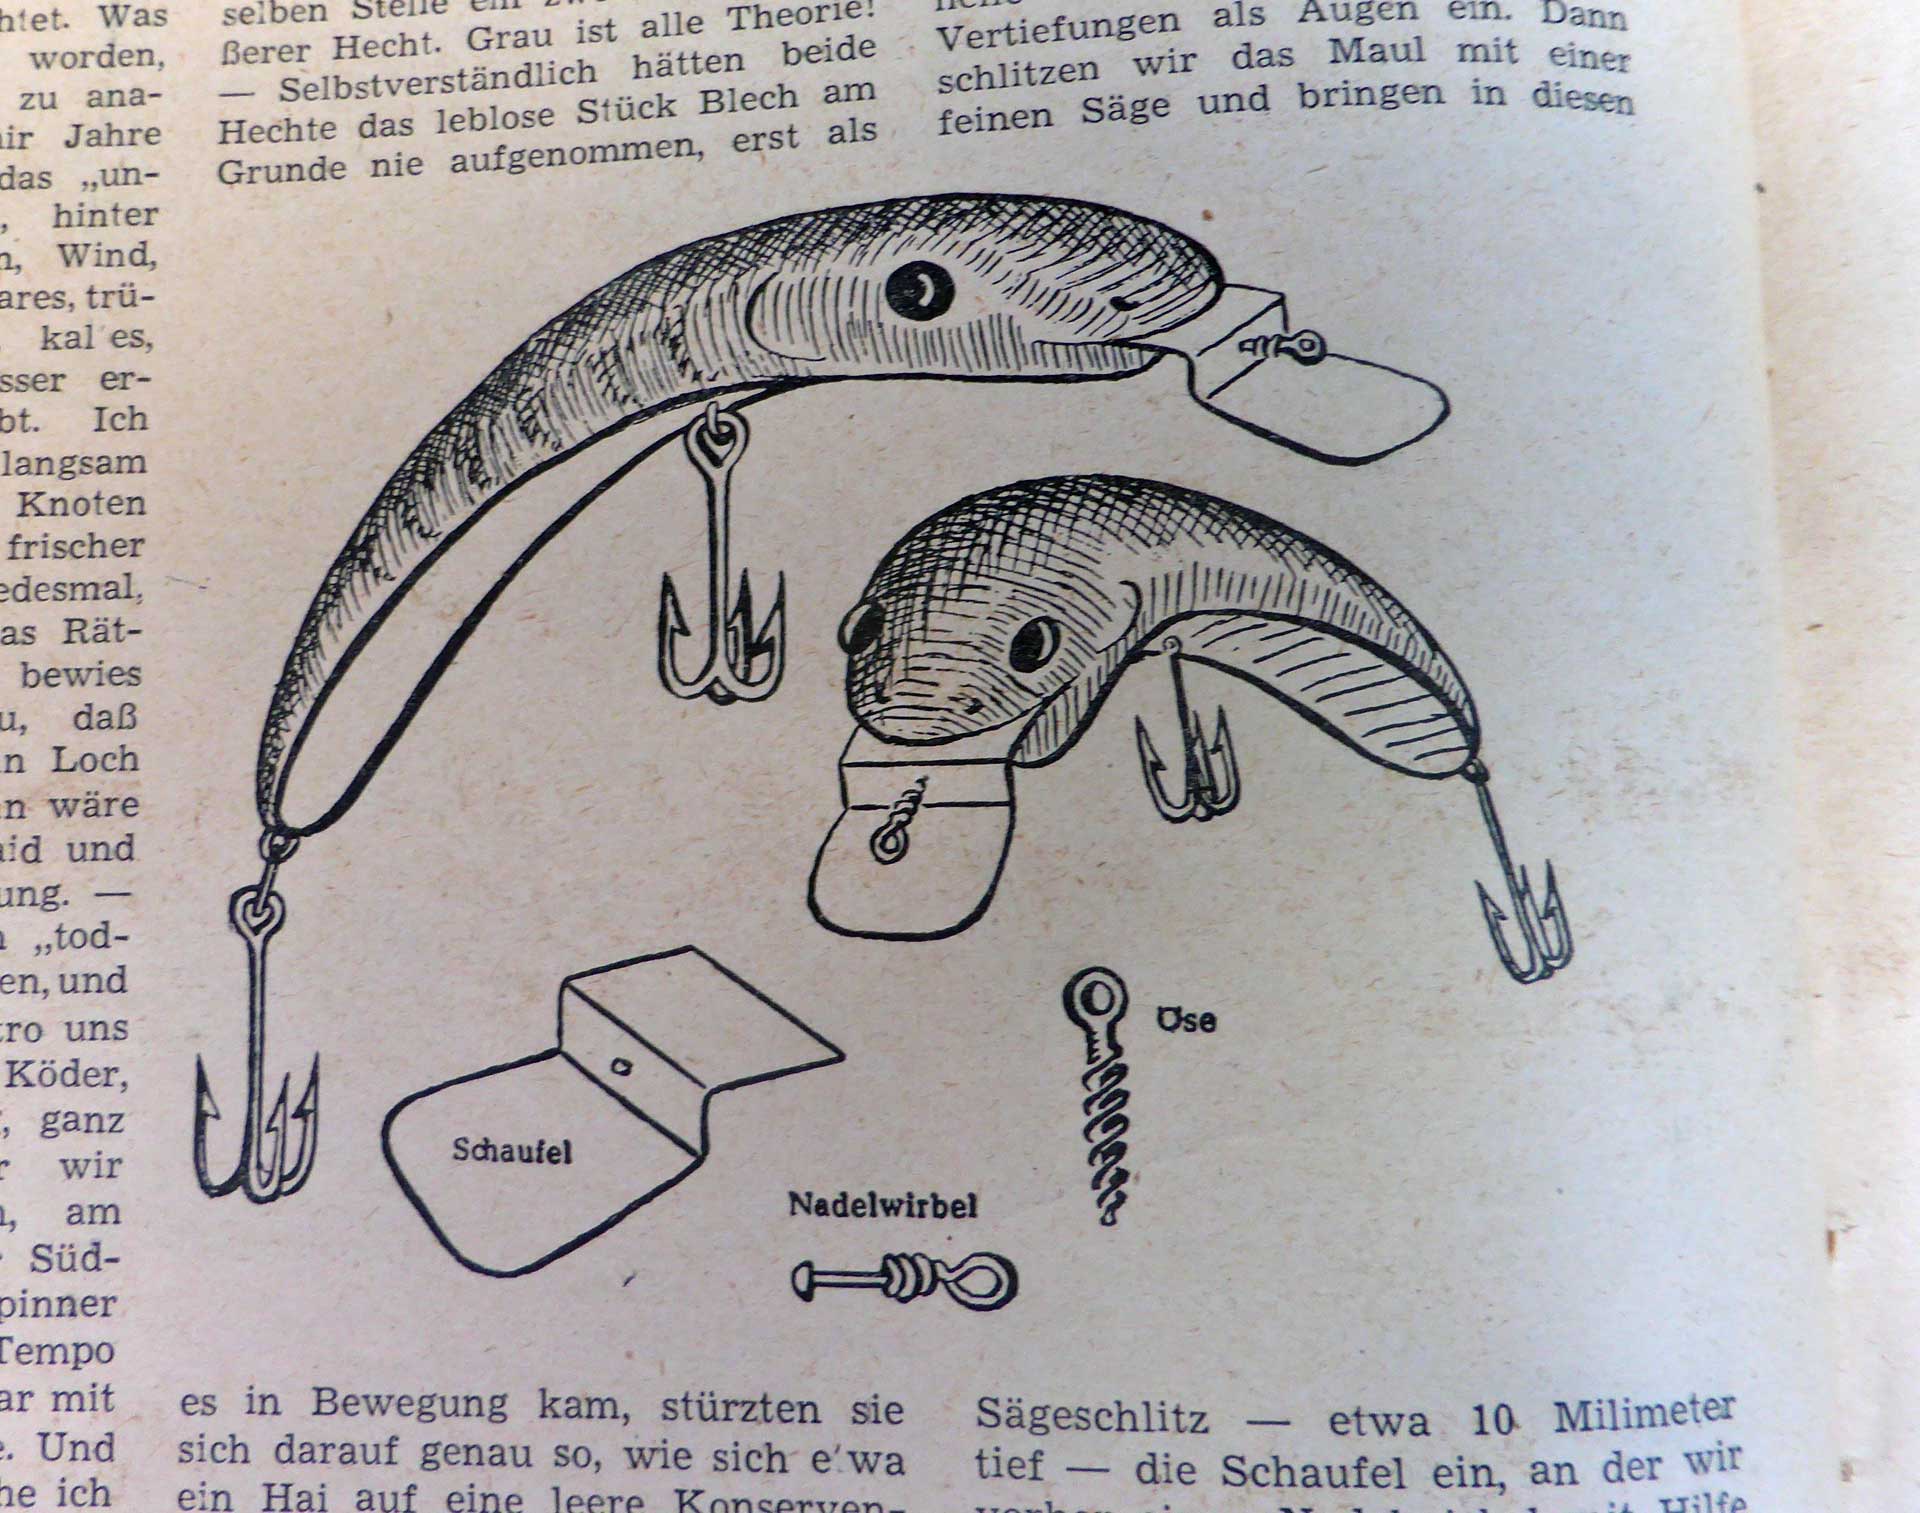 Bananenförmiger "Löffelwobbler" mit Tauchschaufel in der Fischwaid, Januar 1950.